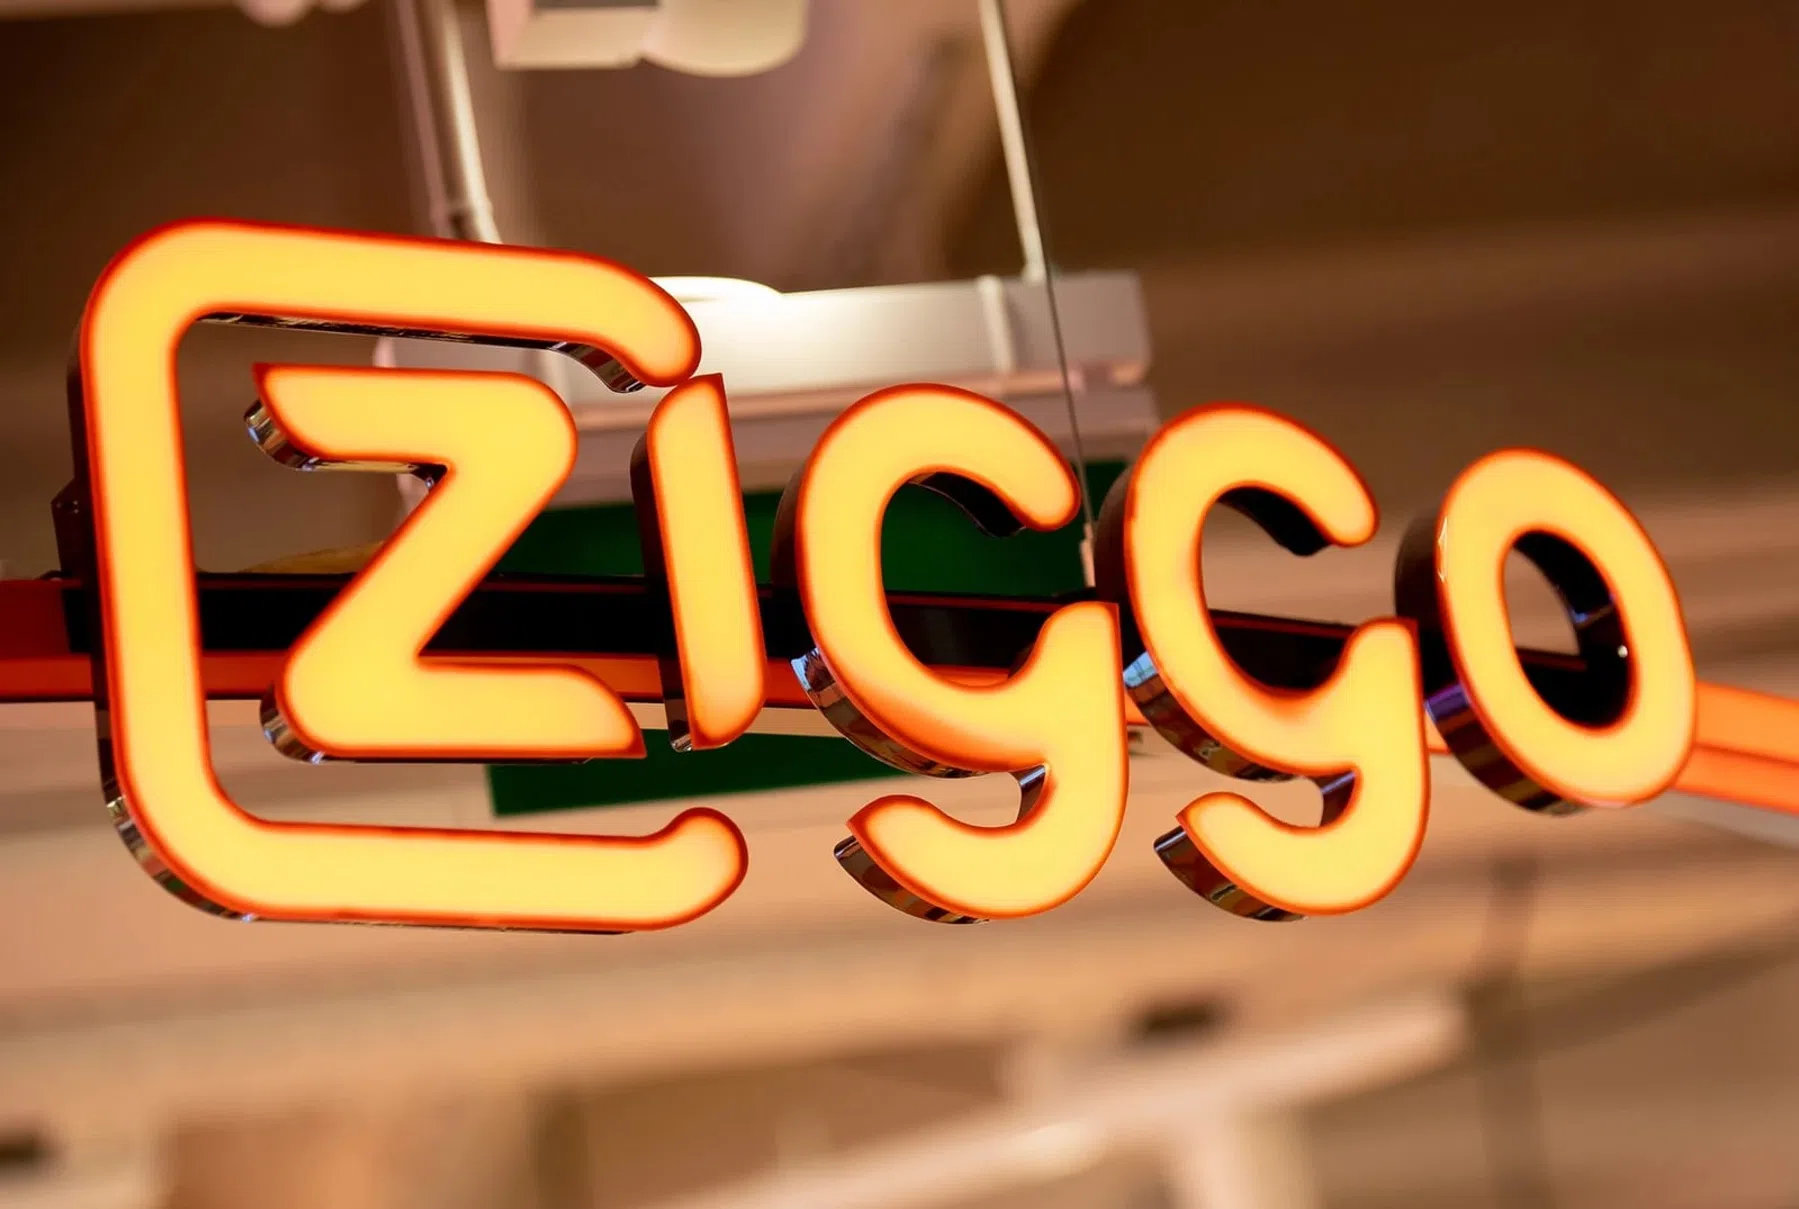 De prijs van Ziggo-abonnementen gaat omhoog